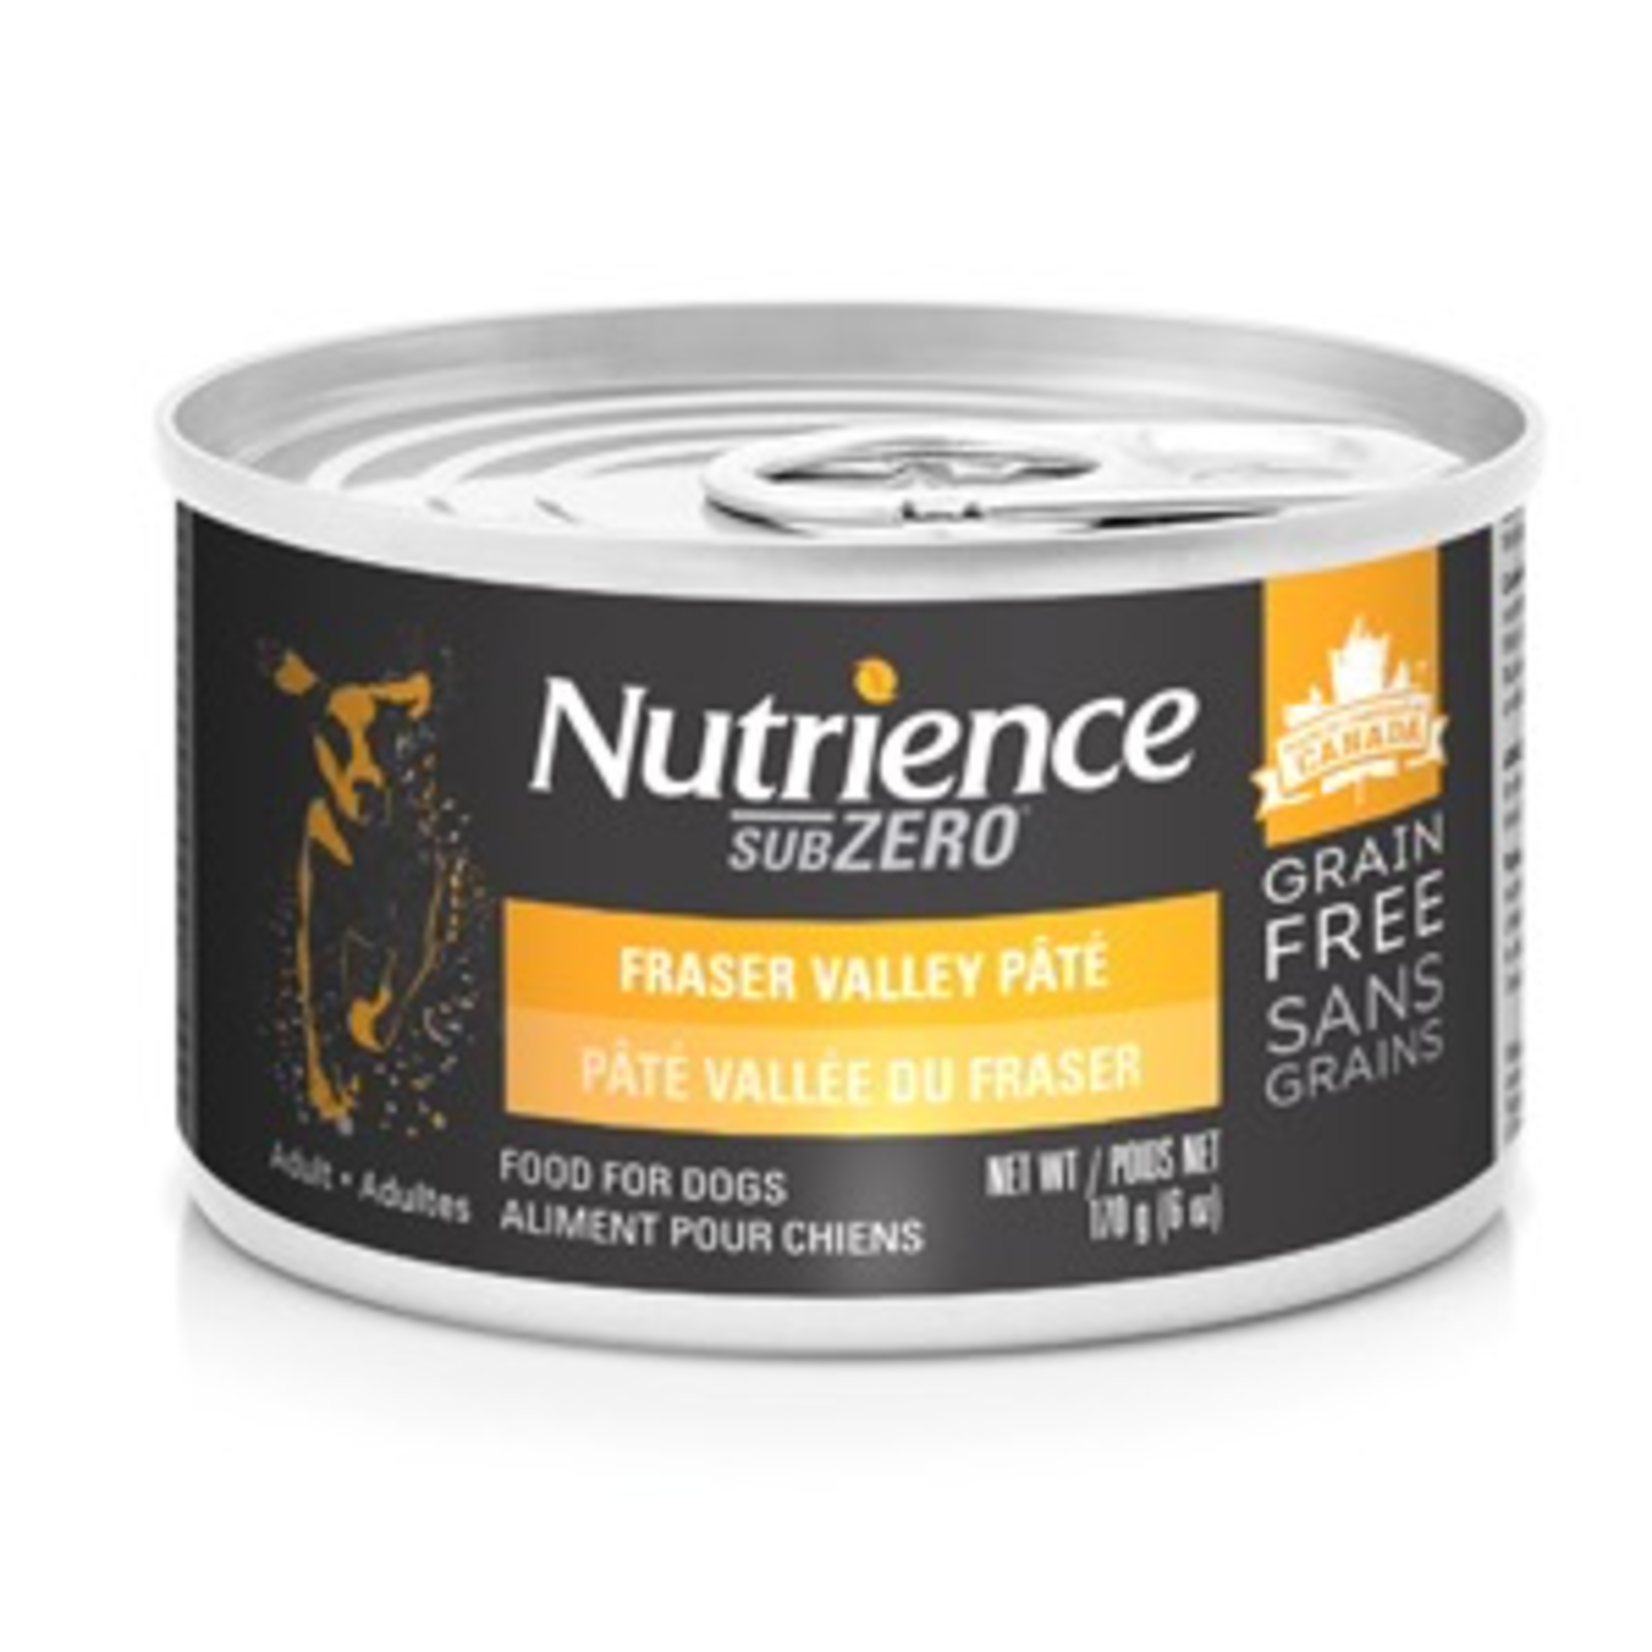 NUTRIENCE Nutrience Grain Free Subzero Pâté - Fraser Valley - 170 g (6 oz)